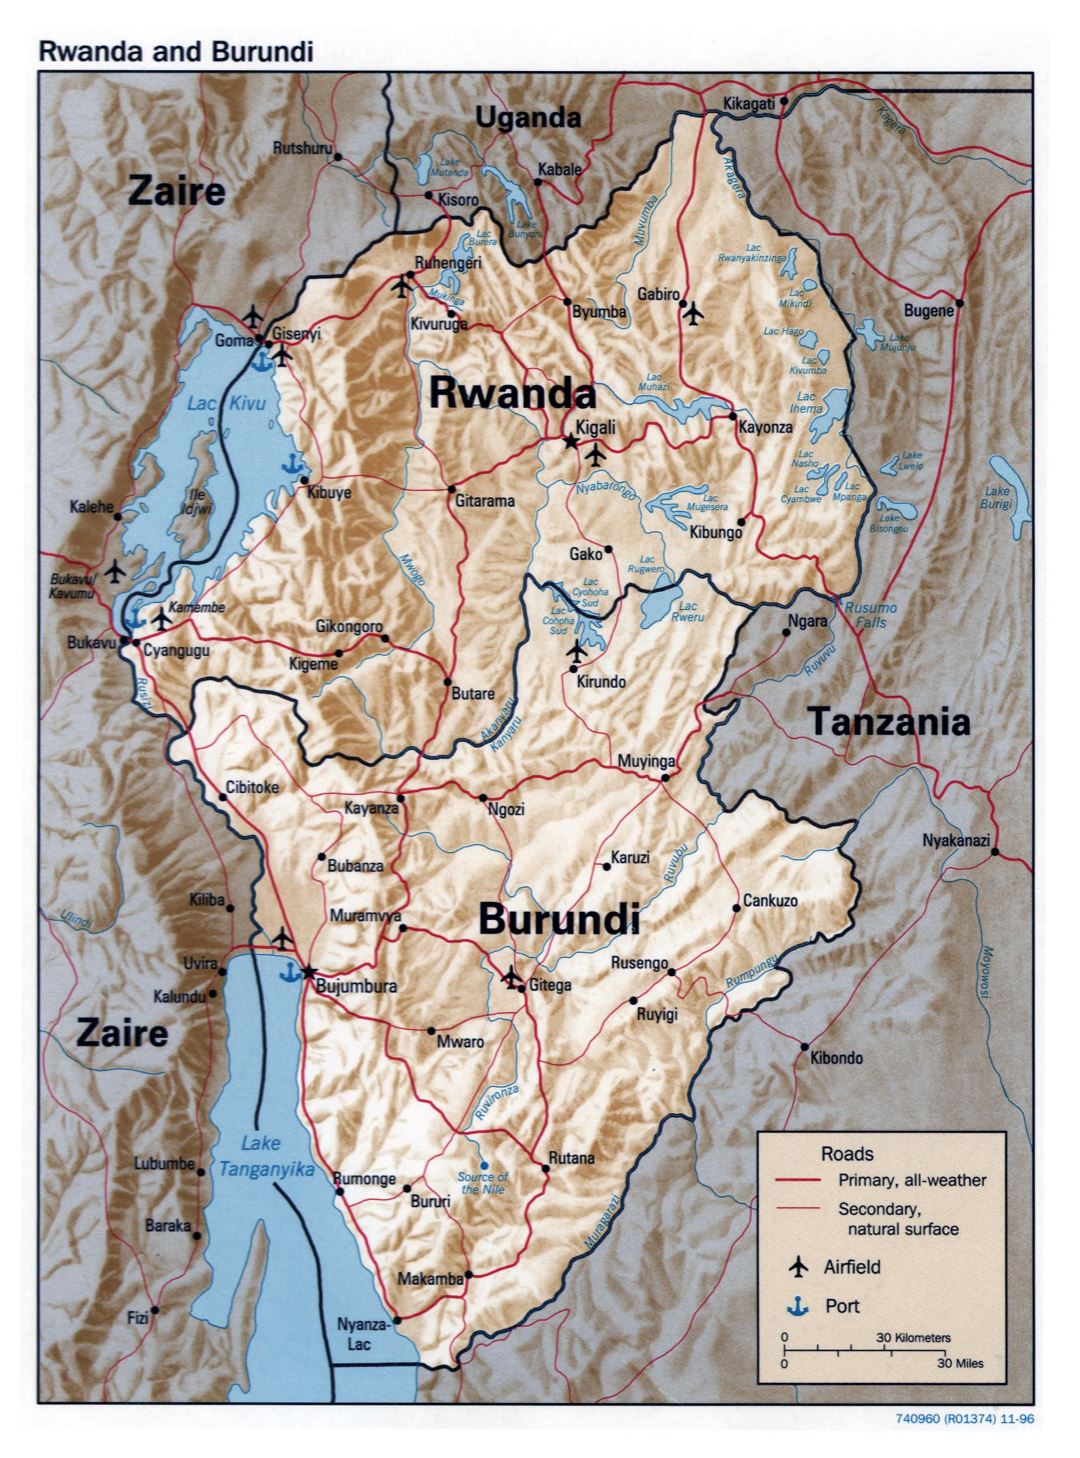 Большая детальная политическая карта Руанды и Бурунди с рельефом, дорогами, крупными городами, аэропортами и портами - 1996